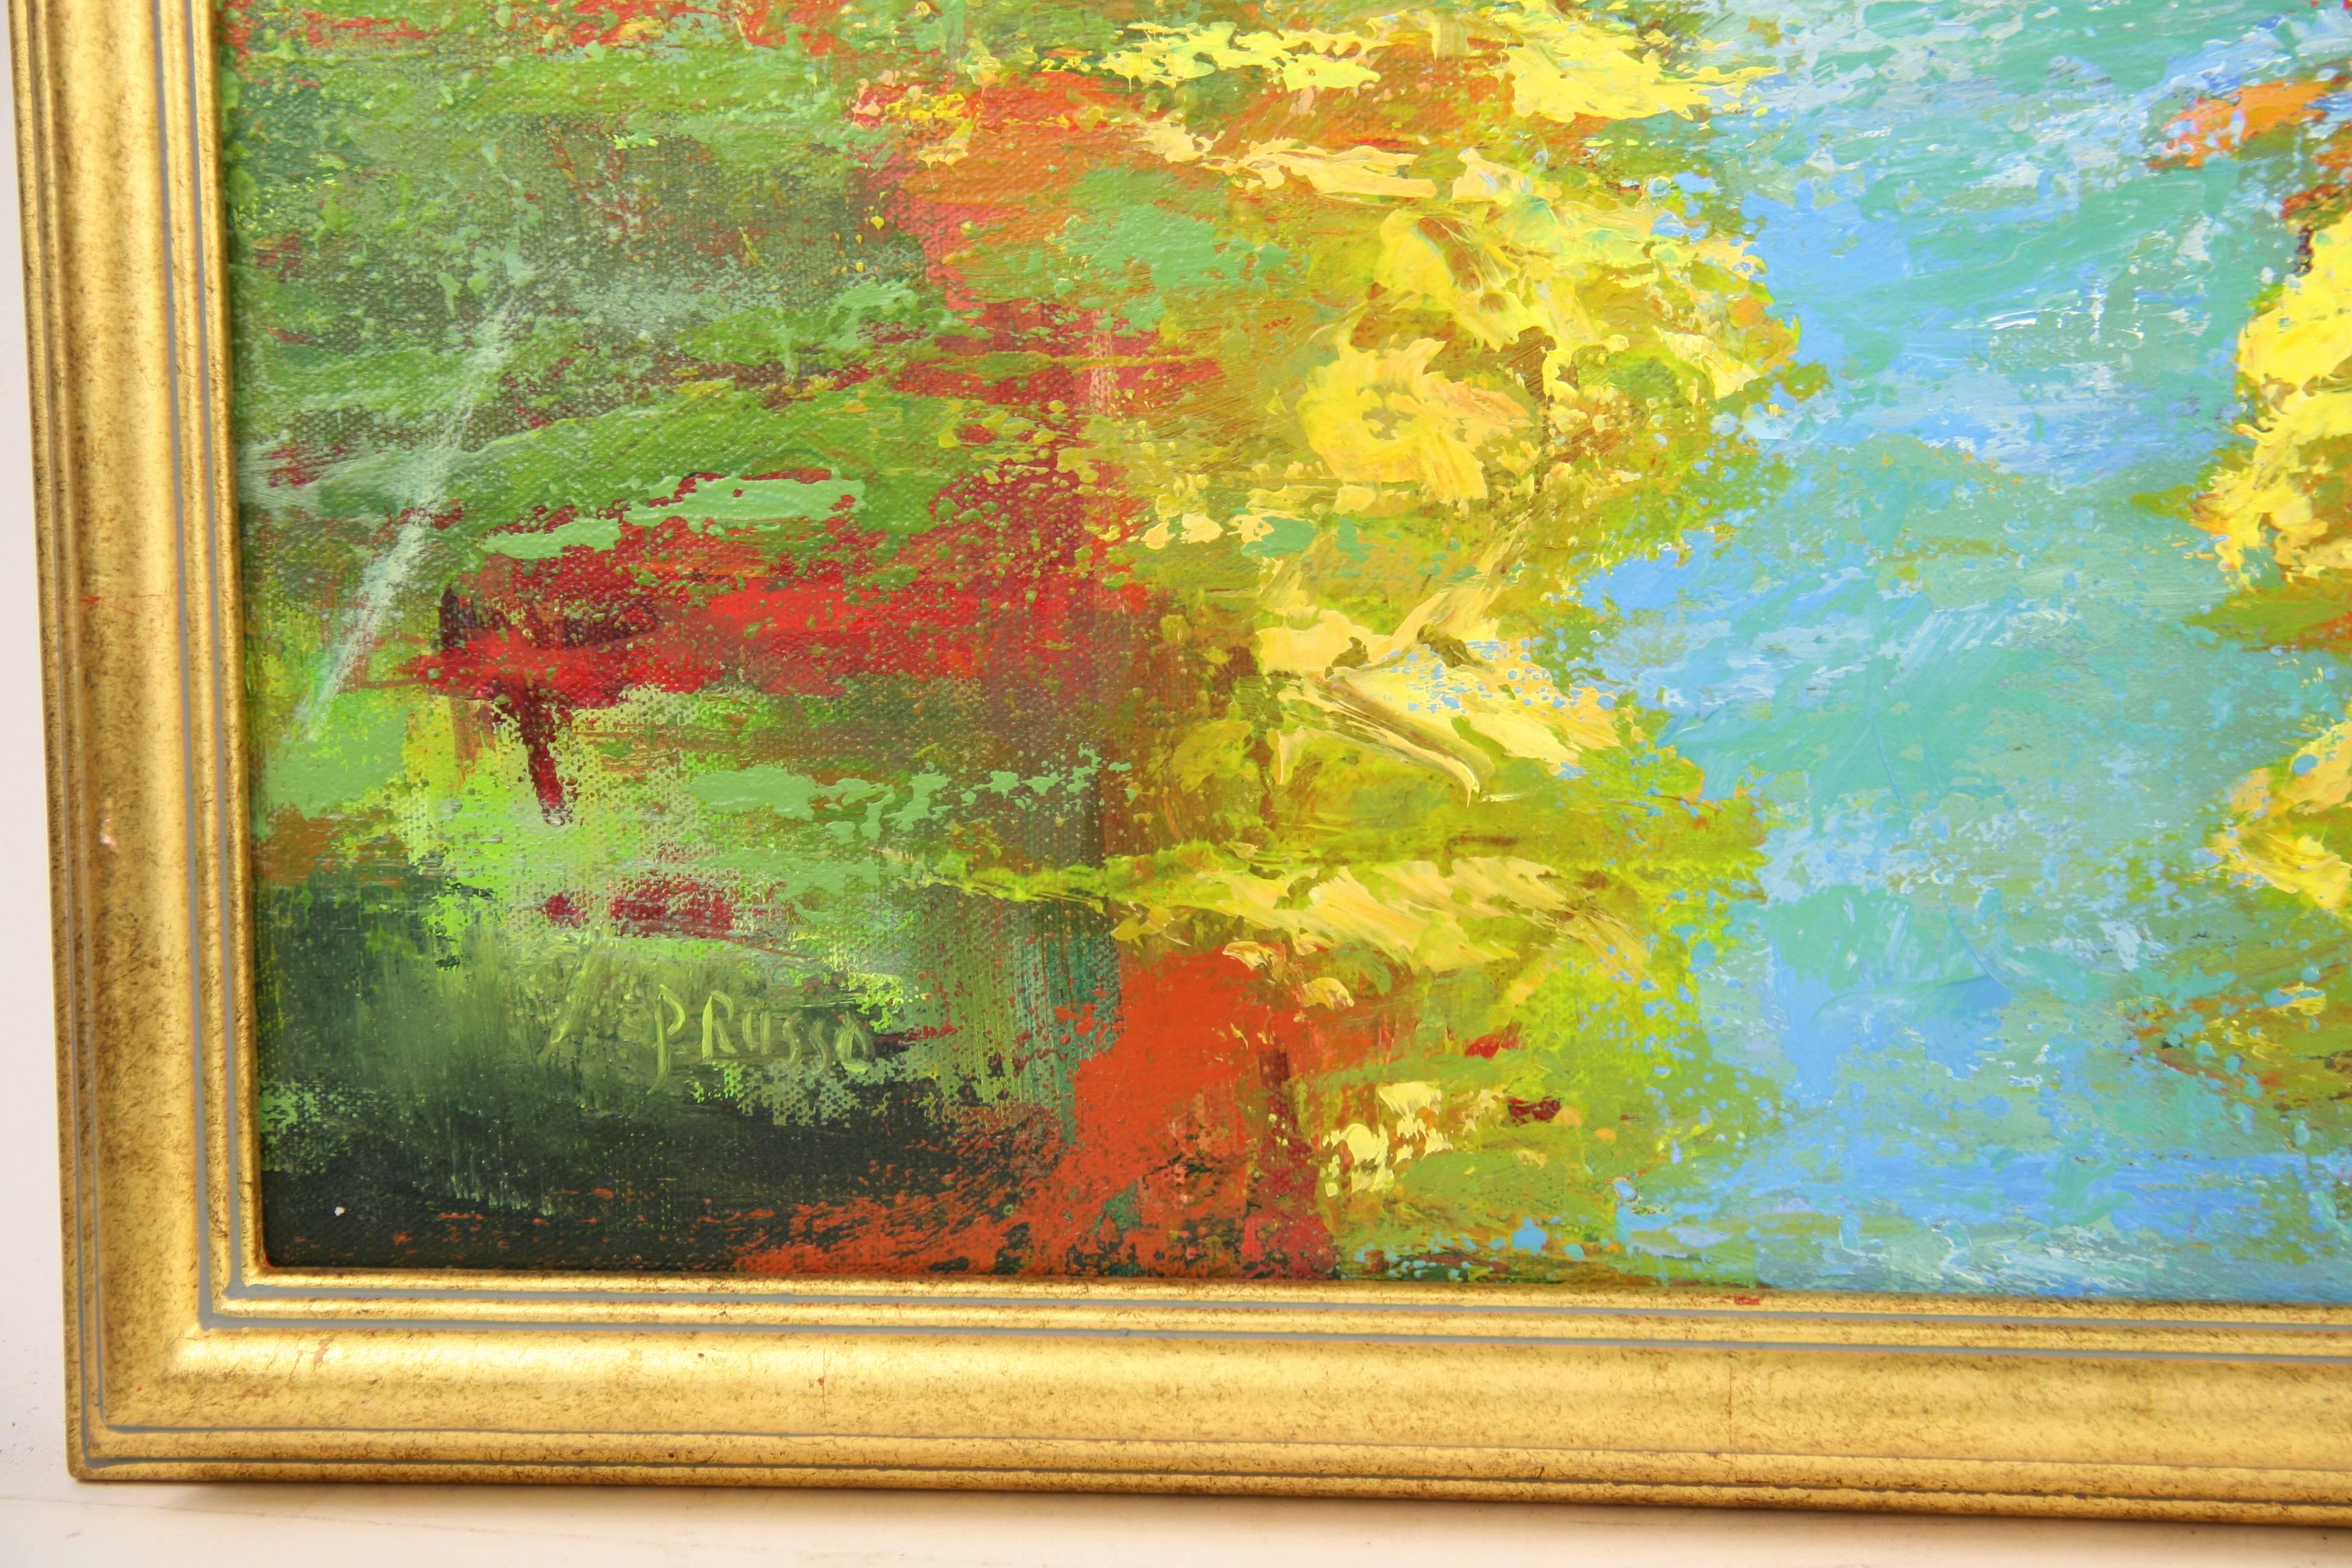 3076a  Marais,peinture abstraite contemporaine,acrylique sur toile présentée dans un cadre en bois doré,signée par P.Russo.Taille de l'image 20 H x 24 L